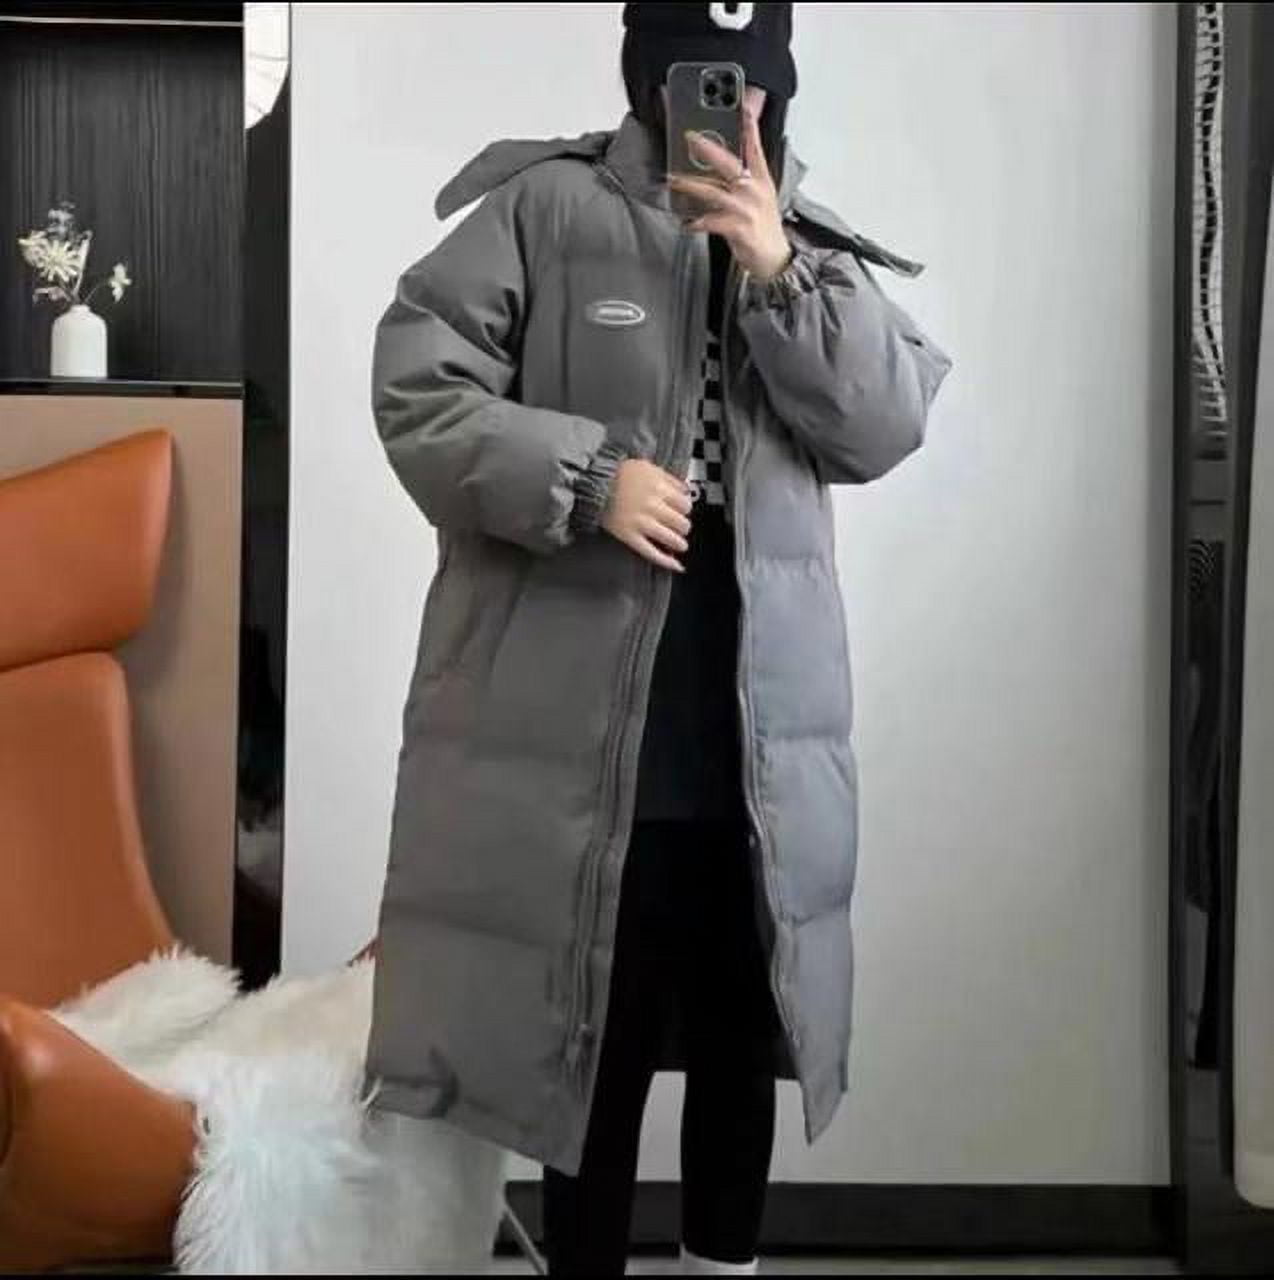 DanceeMangoo Winter Coat Women Fashion Korean Long Jacket Female